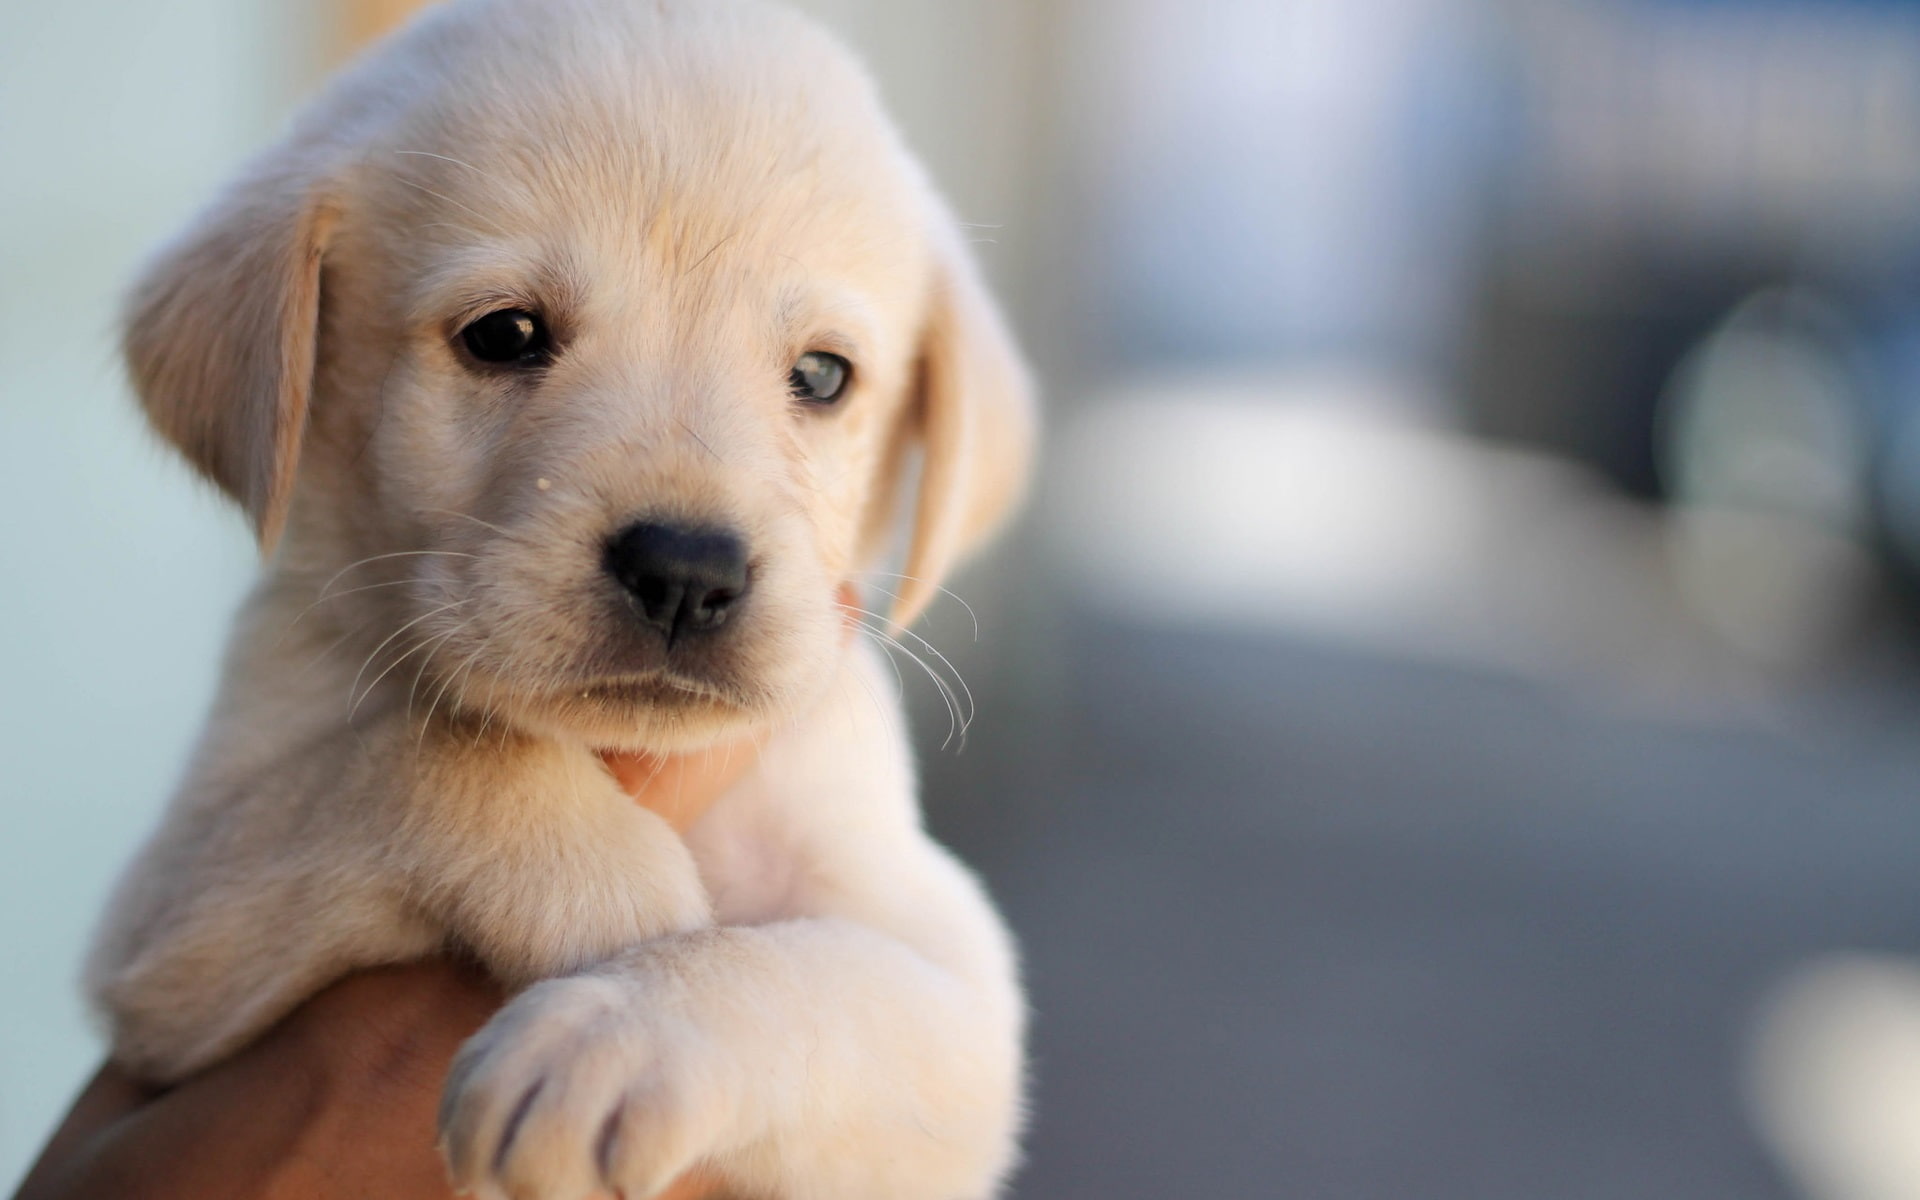 Cute puppy, dog, pet, face, hand